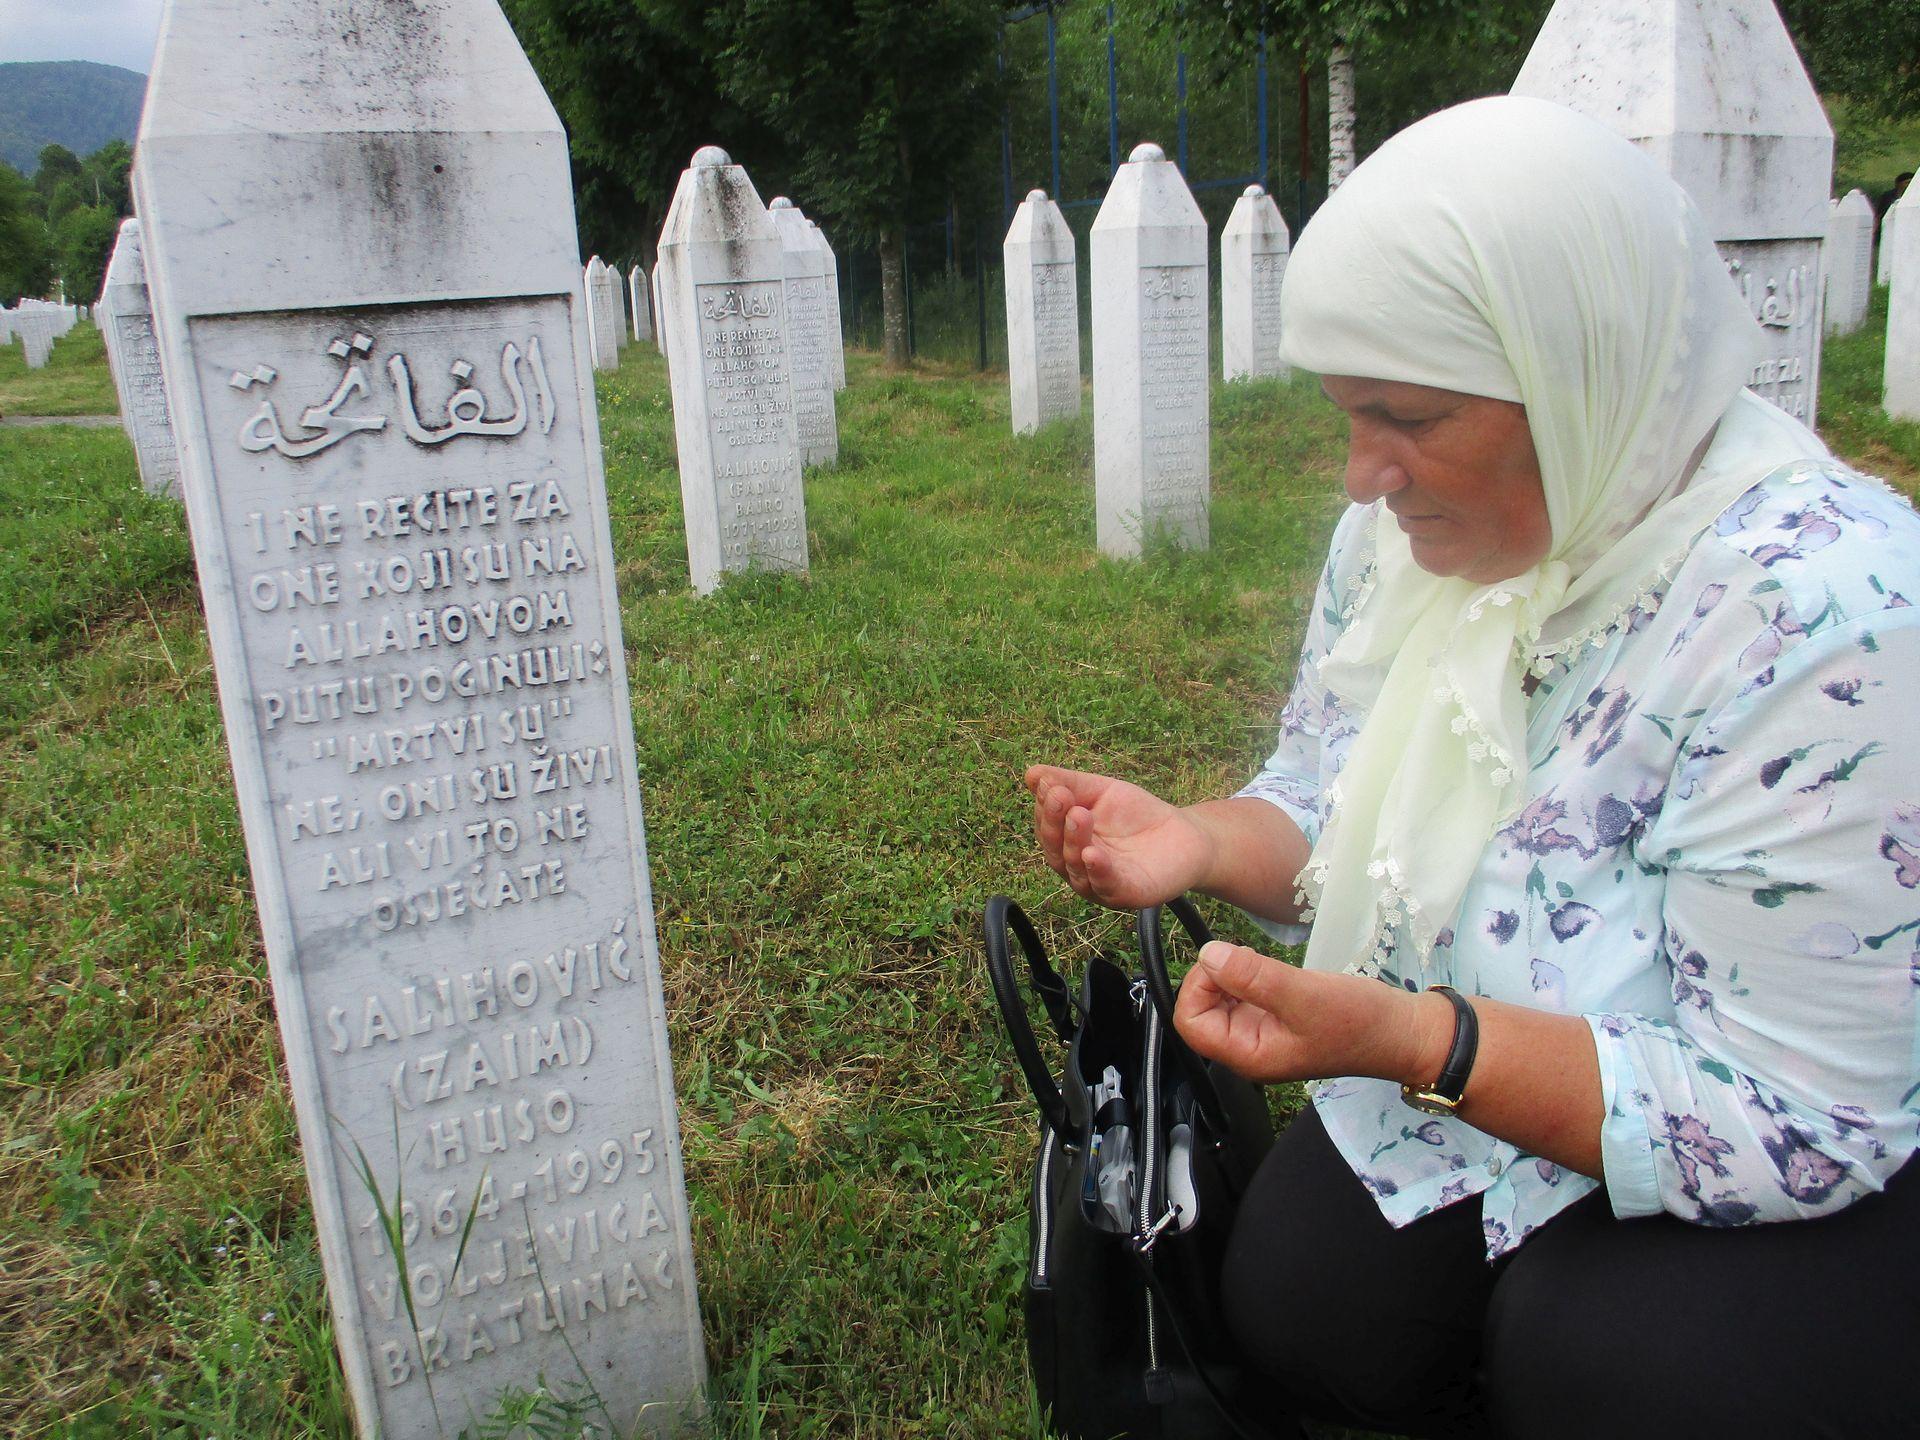 “Borba protiv poricanja”: Velika Britanija obilježava godišnjicu genocida u Srebrenici